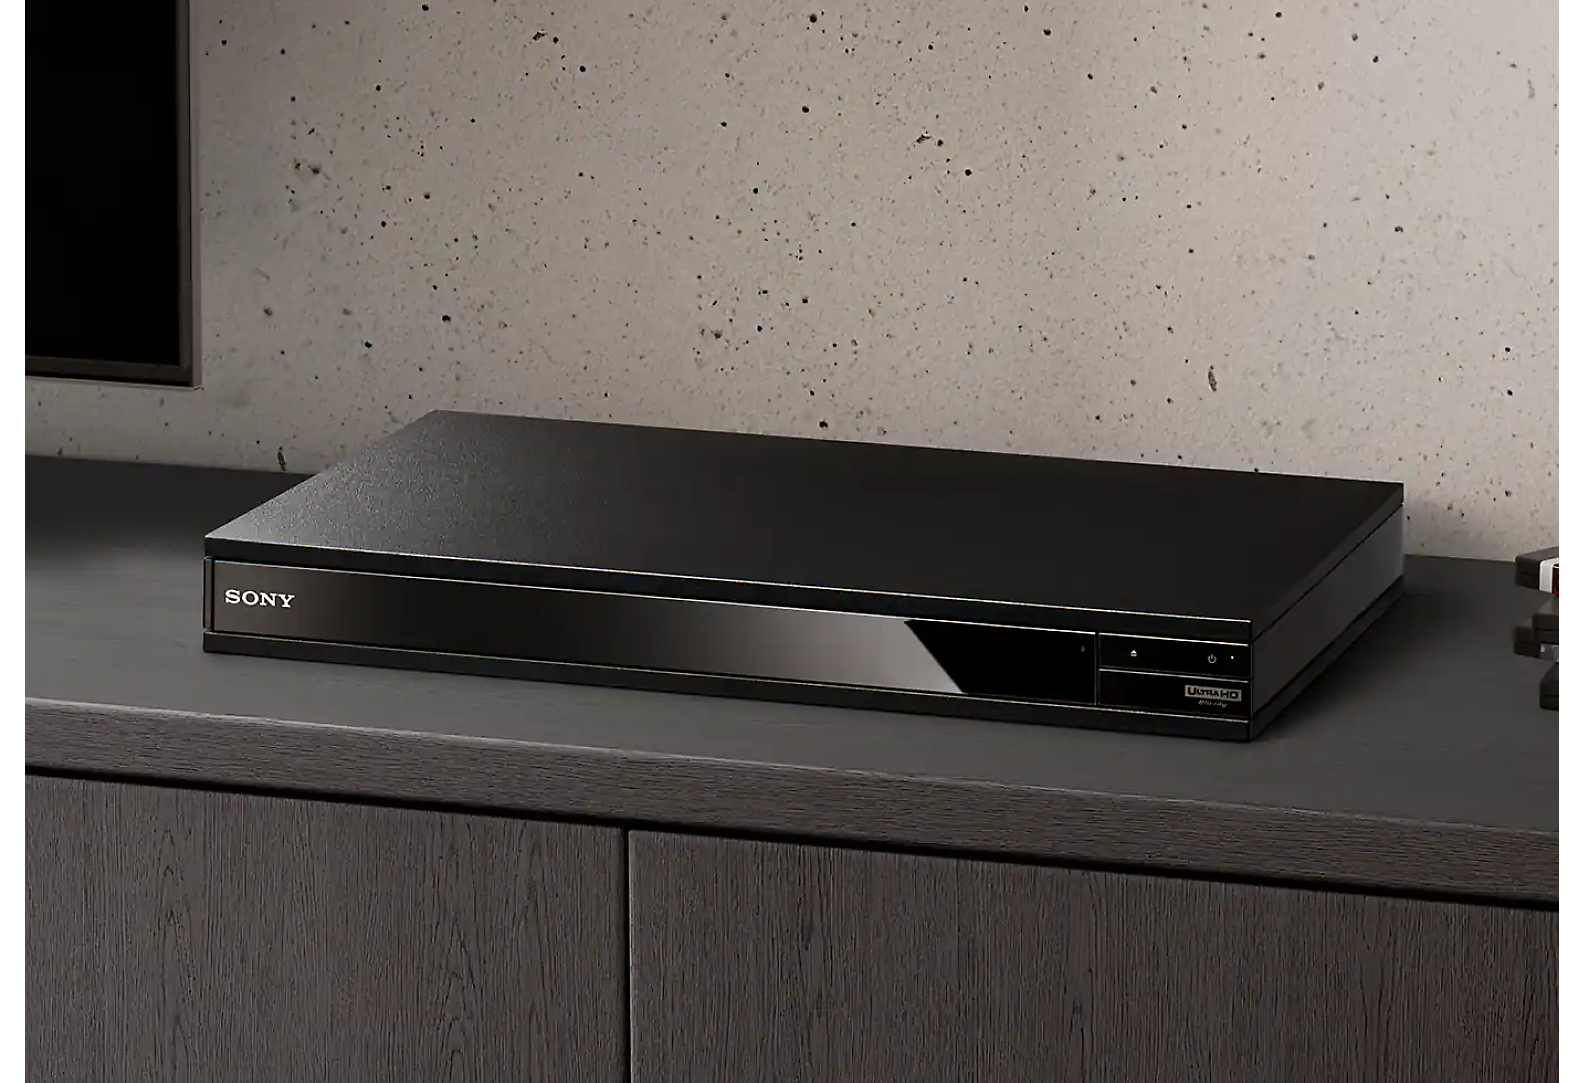 Црн Blu-ray Disc-плеер се гледа помеѓу куп Blu-ray-дискови и црн телевизор.